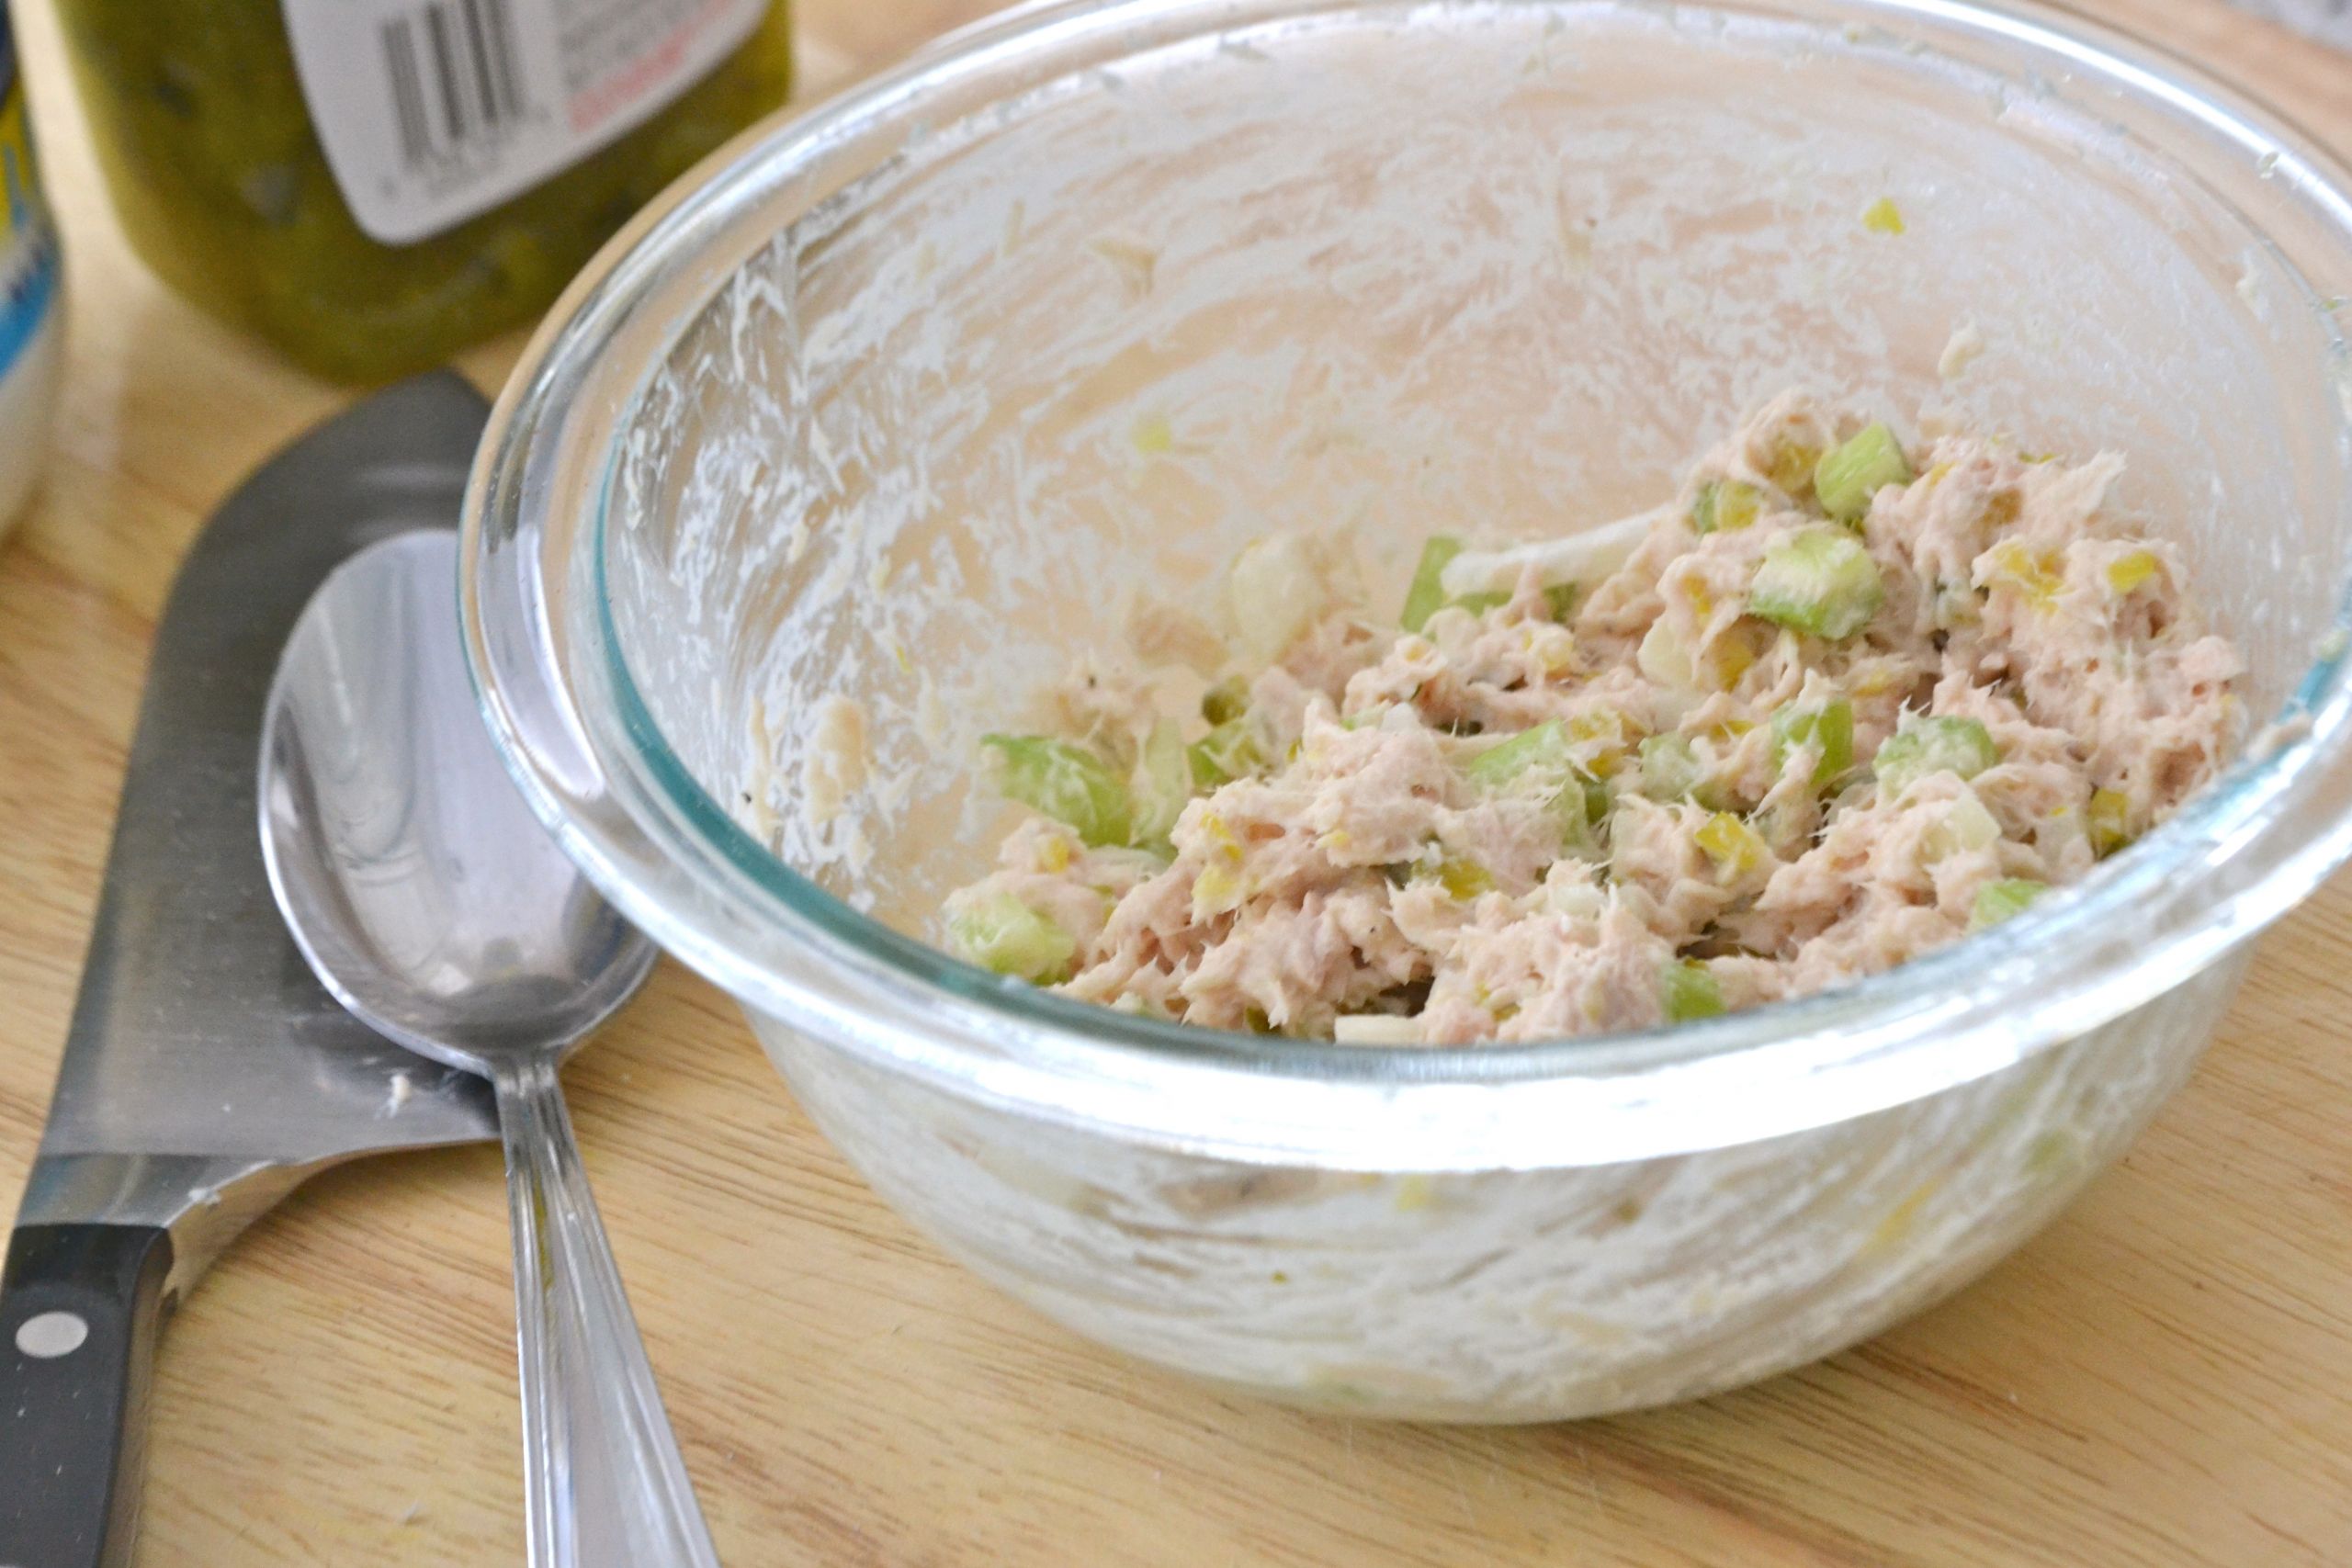 Tuna Fish Recipes Without Mayonnaise
 tuna fish salad without mayo